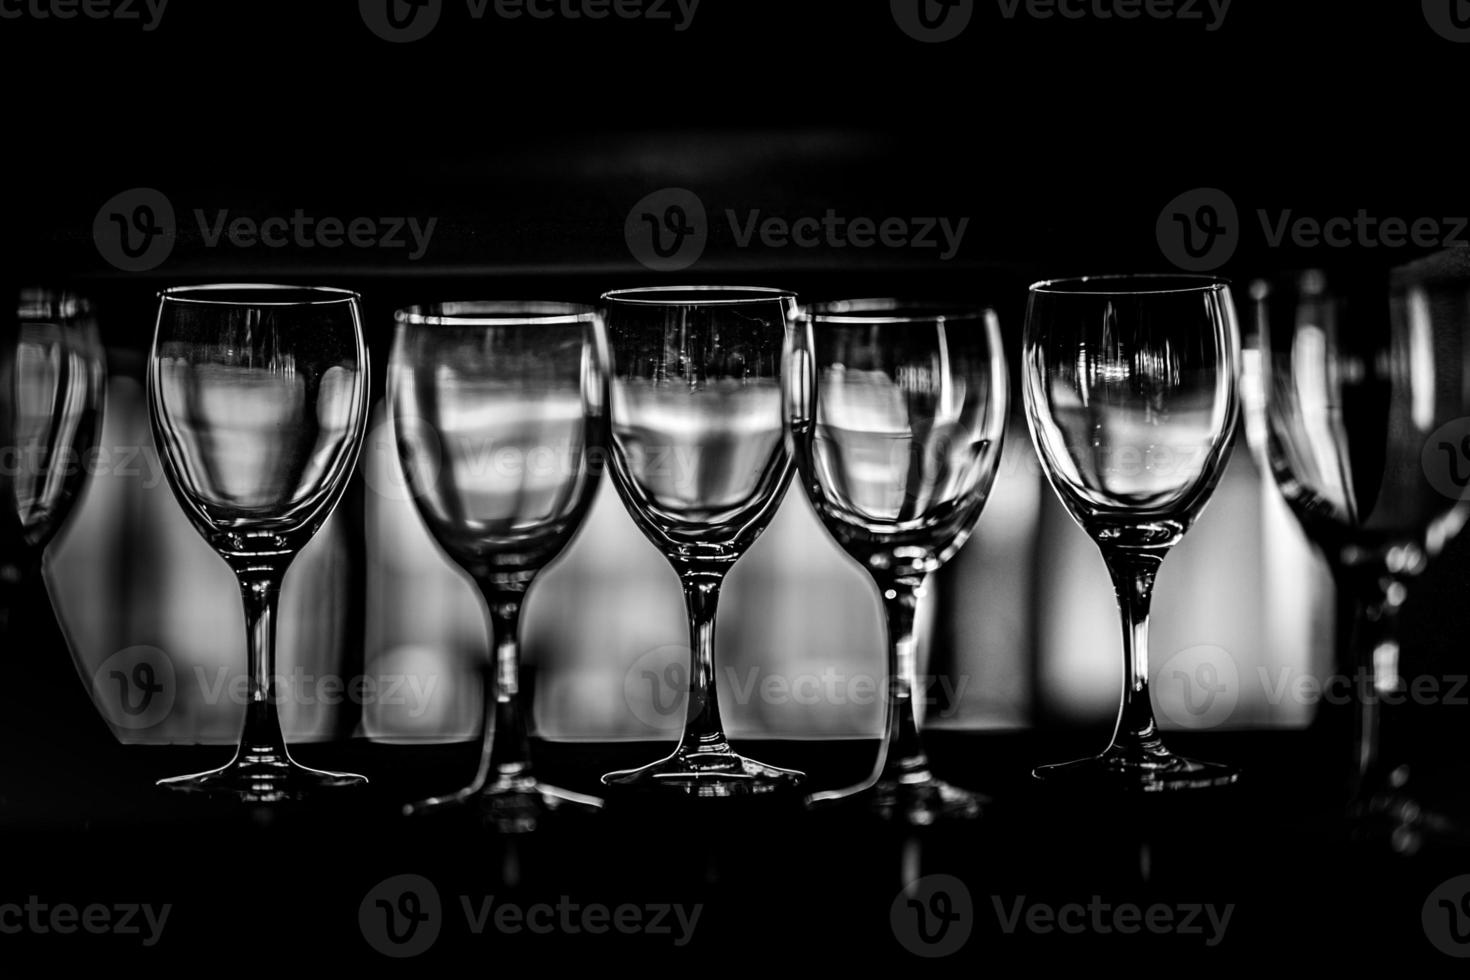 rangées de verres à vin vides sur la vitrine, photographie en noir et blanc photo